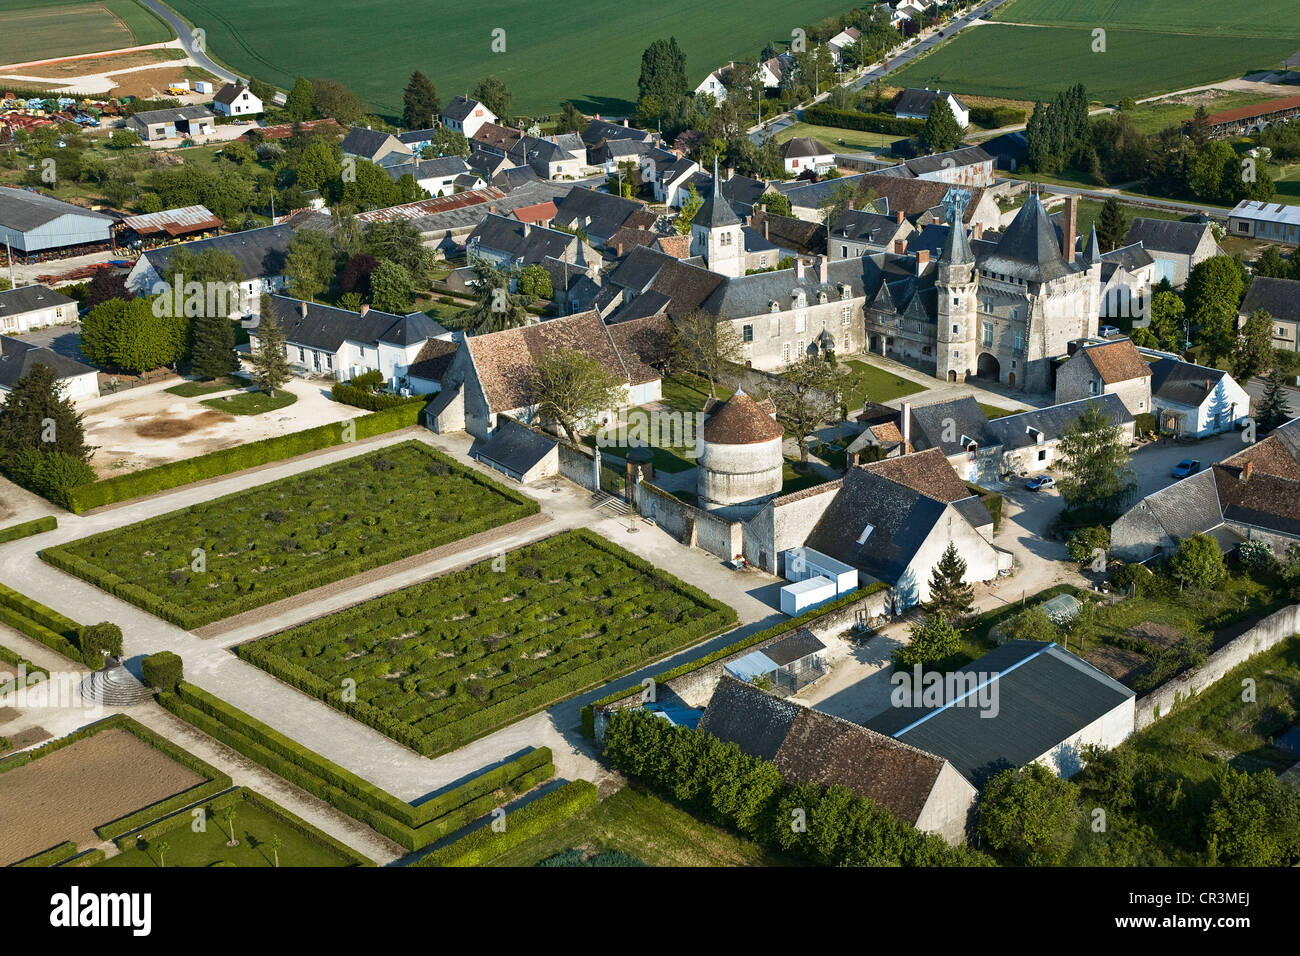 France, Loir et Cher, Chateau de Talcy (aerial view) Stock Photo